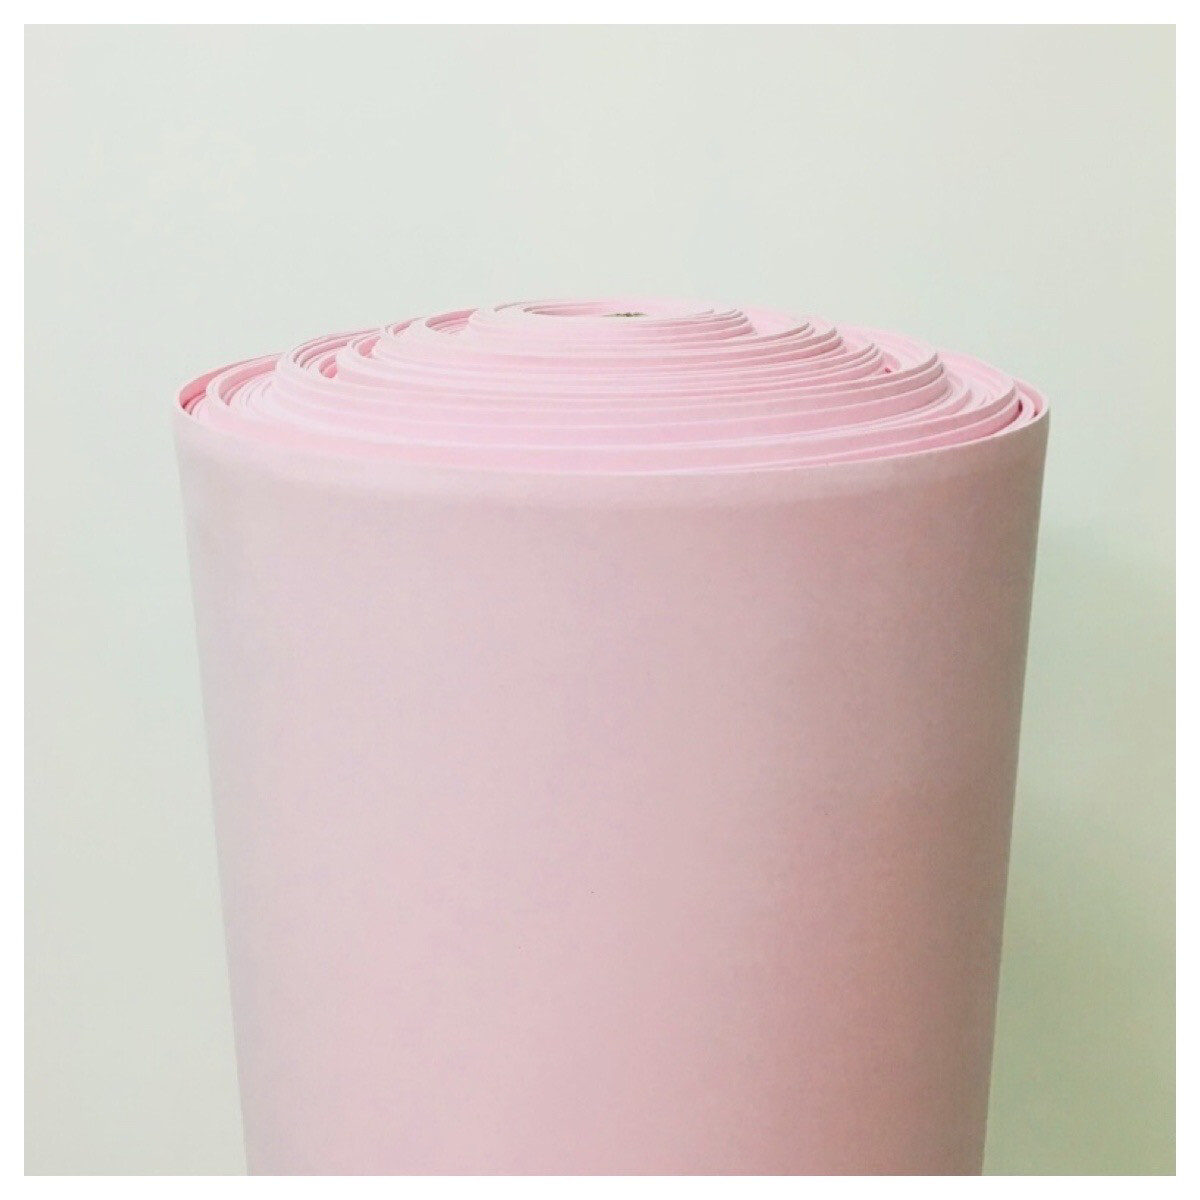 Фоамиран (EVA) рулонный, розовый зефир, толщина - 2 мм, ширина 1м